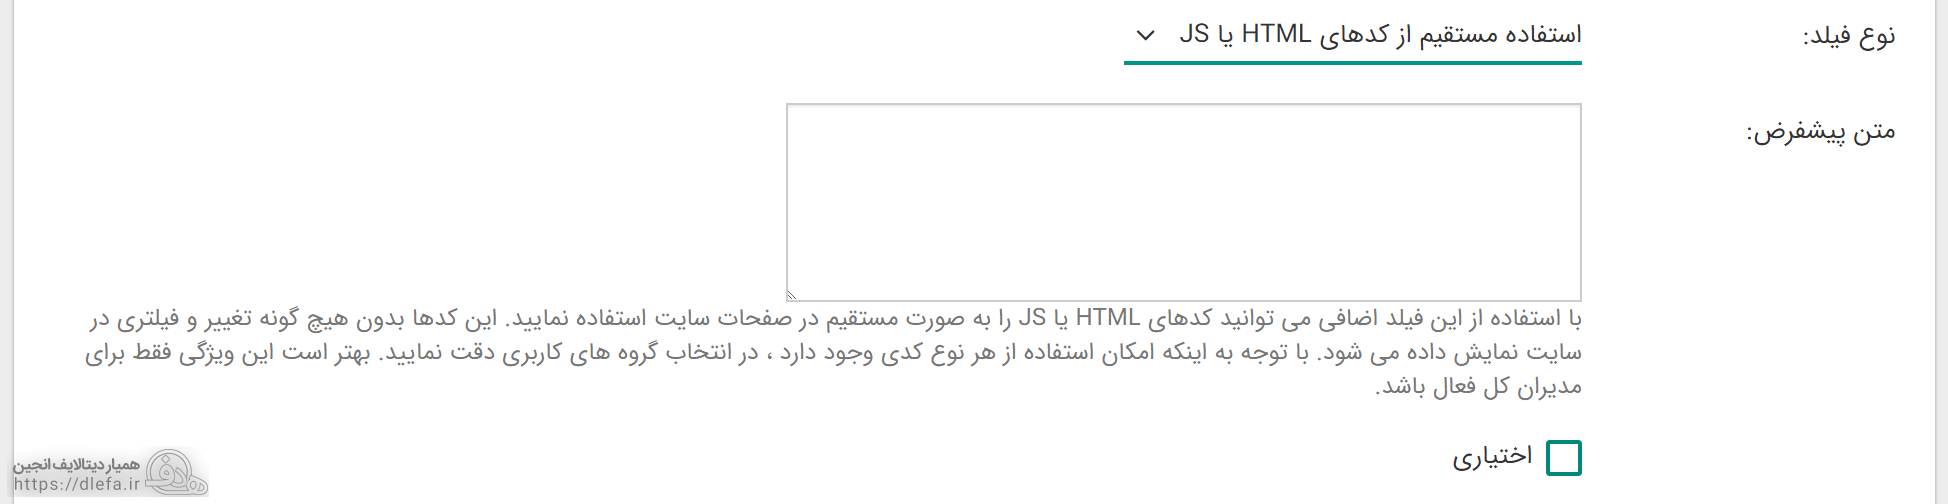 امکان استفاده مستقیم از کدهای HTML و JS در فیلد اضافی دیتالایف